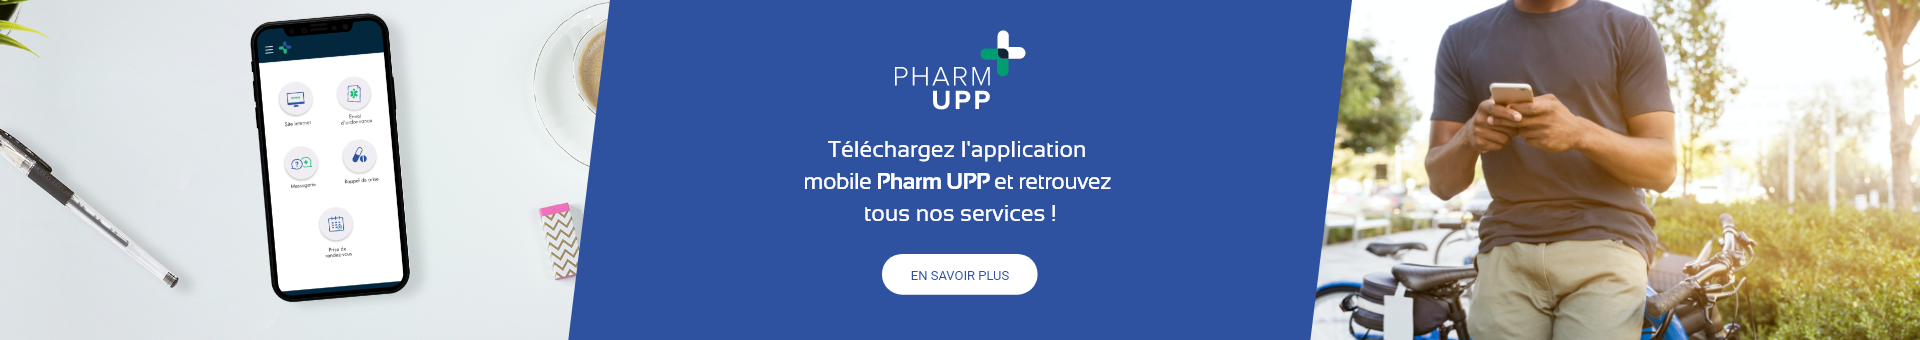 Pharmacie Philippeville,Grenoble